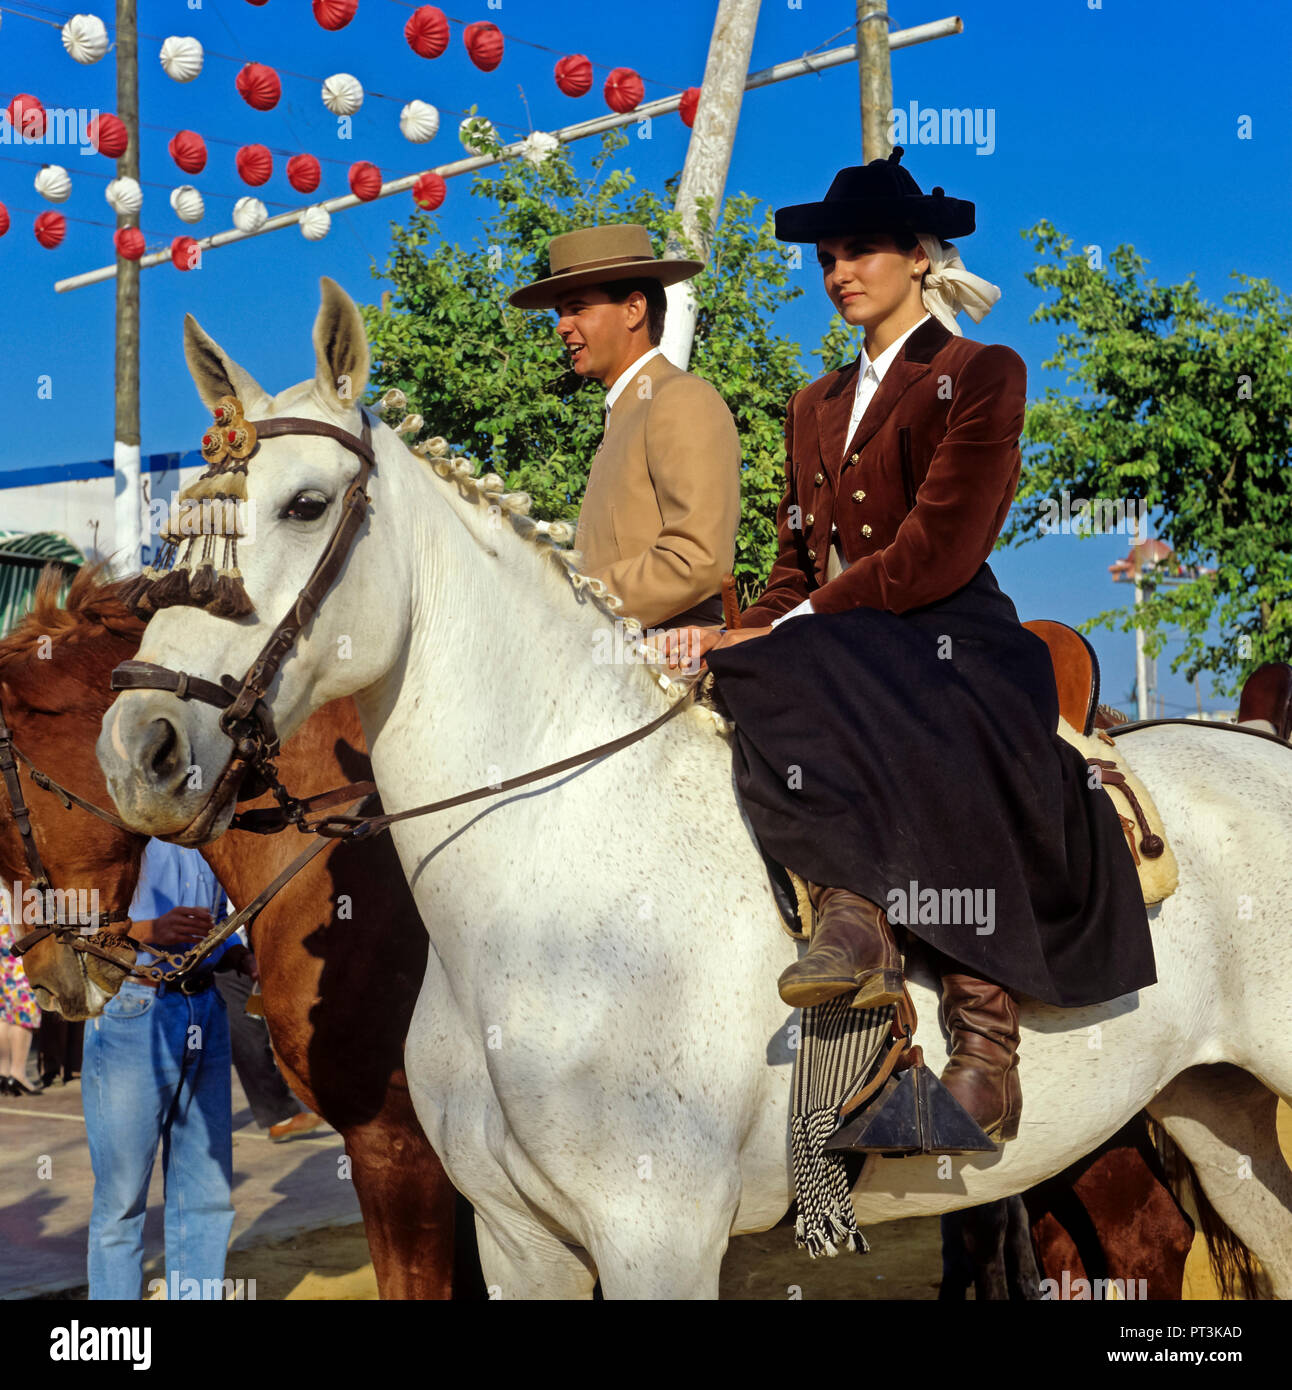 Foire d'avril, la fille sur le cheval habillé en costume traditionnel de  amazon, Séville, Andalousie, Espagne, Europe Photo Stock - Alamy